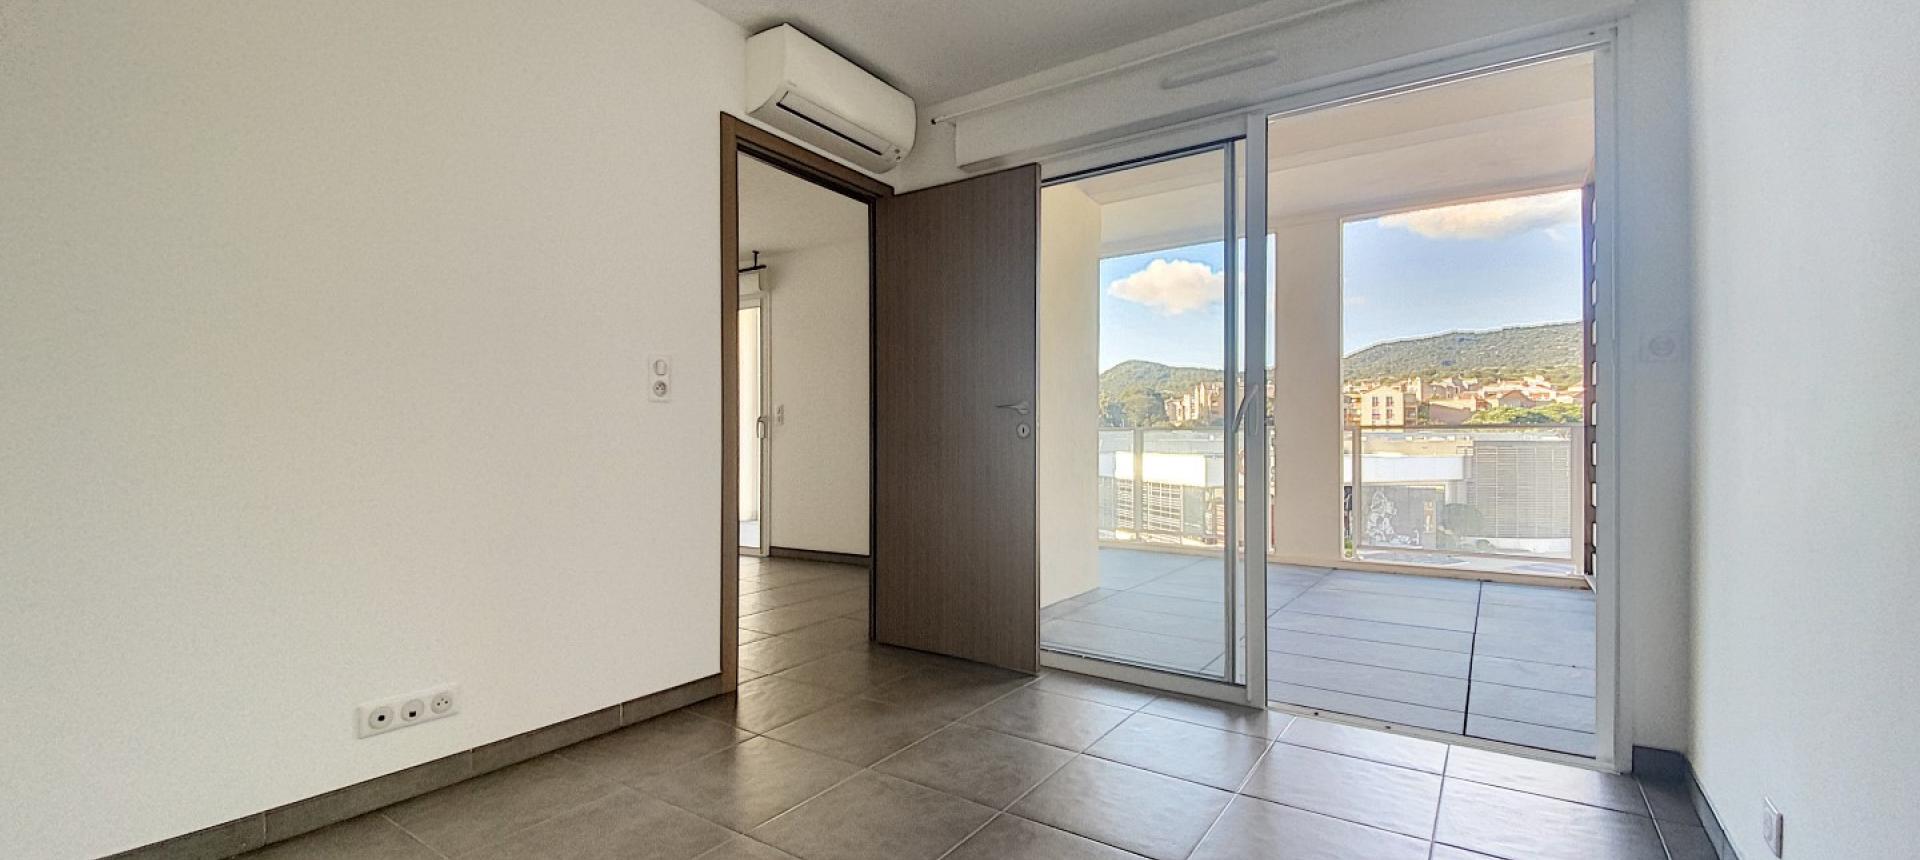 A Ajaccio, secteur de la Rocade, vente d'un appartement de type F3 de 67 m² avec terrasse - résidence récente